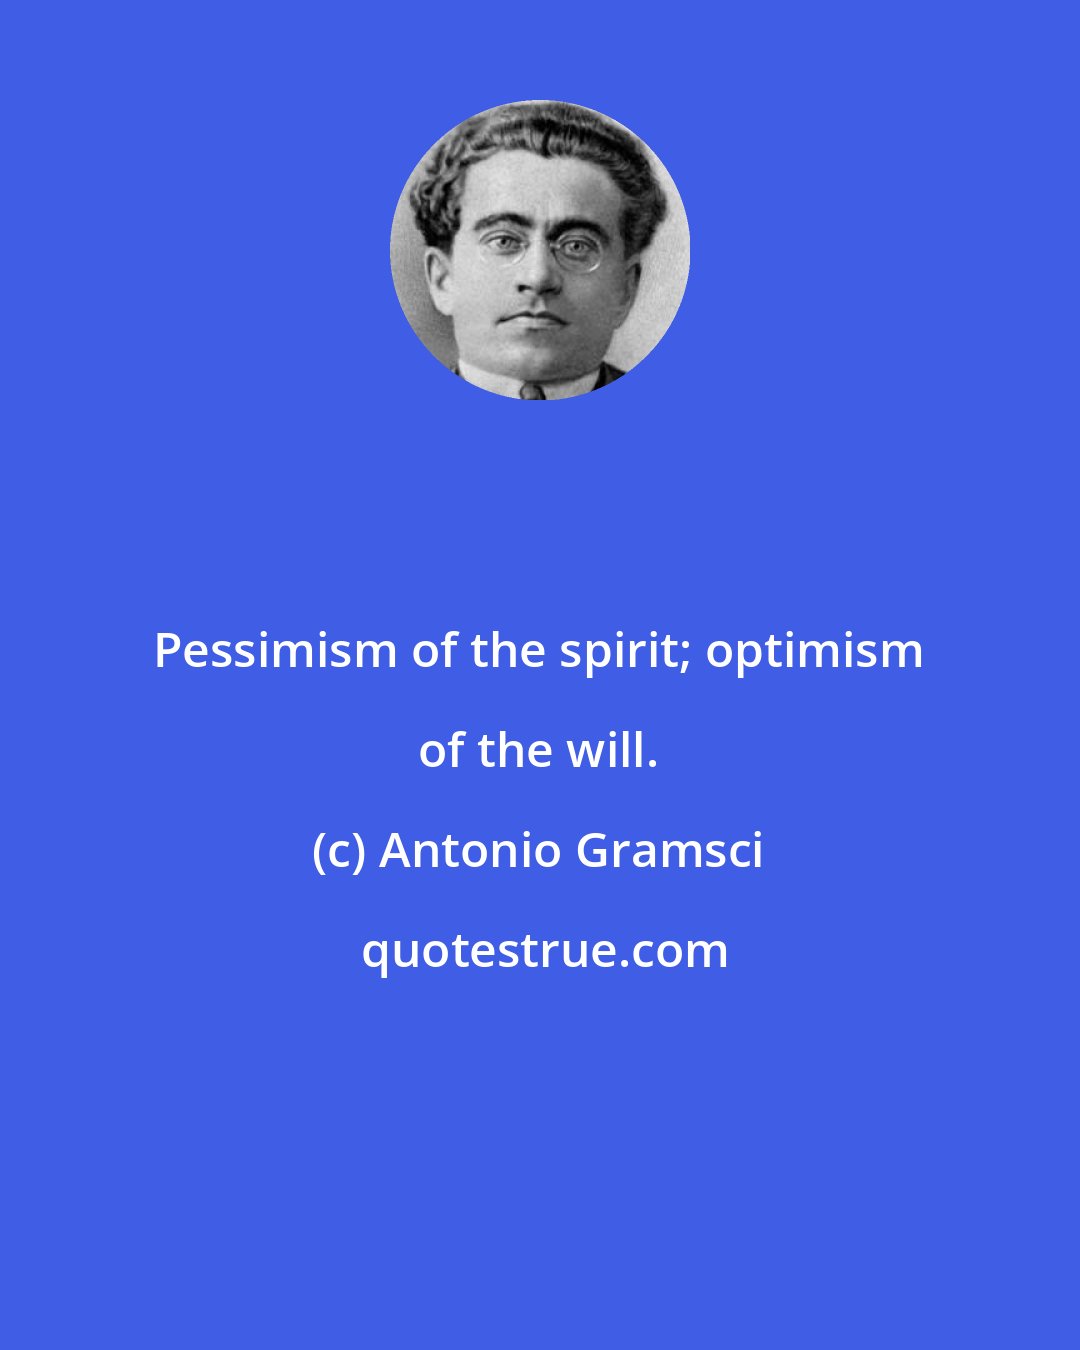 Antonio Gramsci: Pessimism of the spirit; optimism of the will.